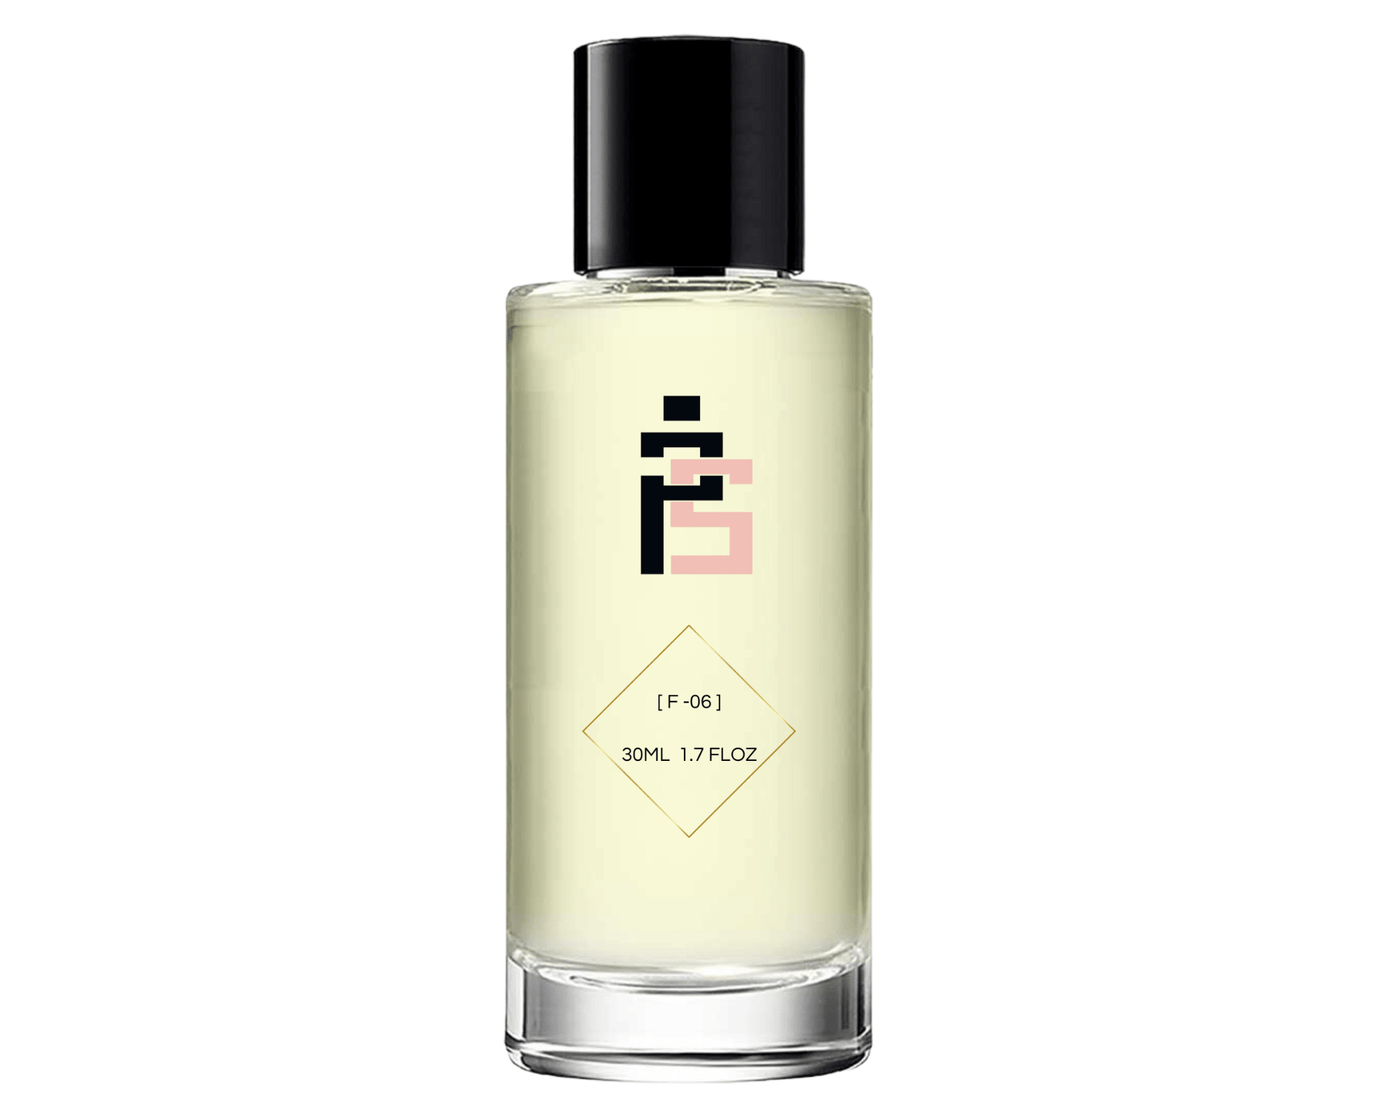 Parfum - F06 |similaire à VIP 212